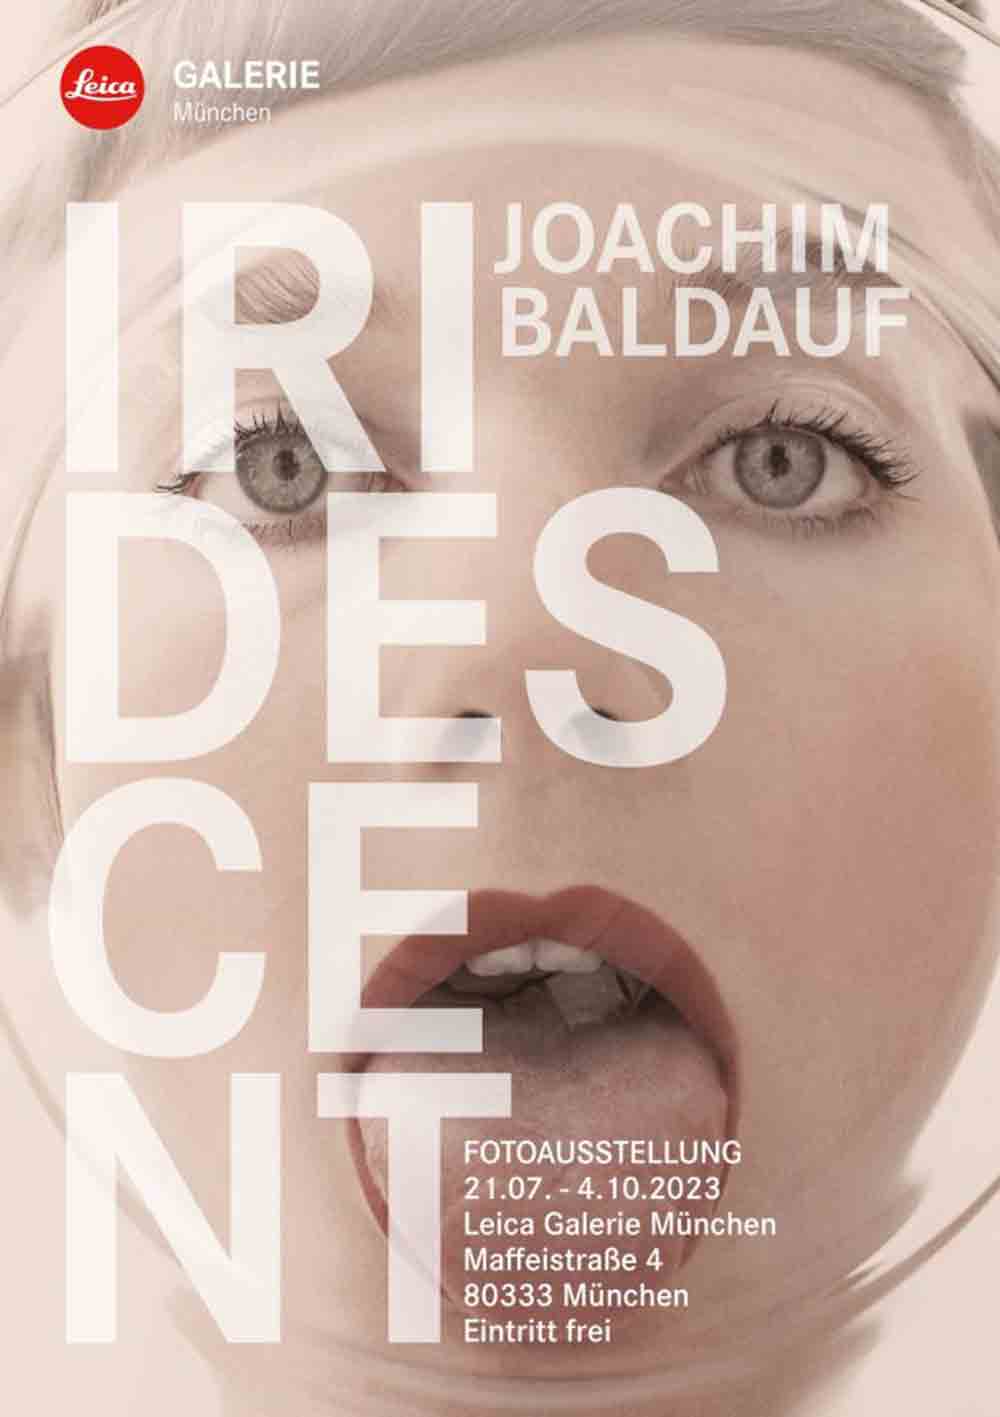 Leica Galerie München, Fotoausstellung »Iridescent« von Joachim Baldauf, 21. Juli bis 4. Oktober 2023